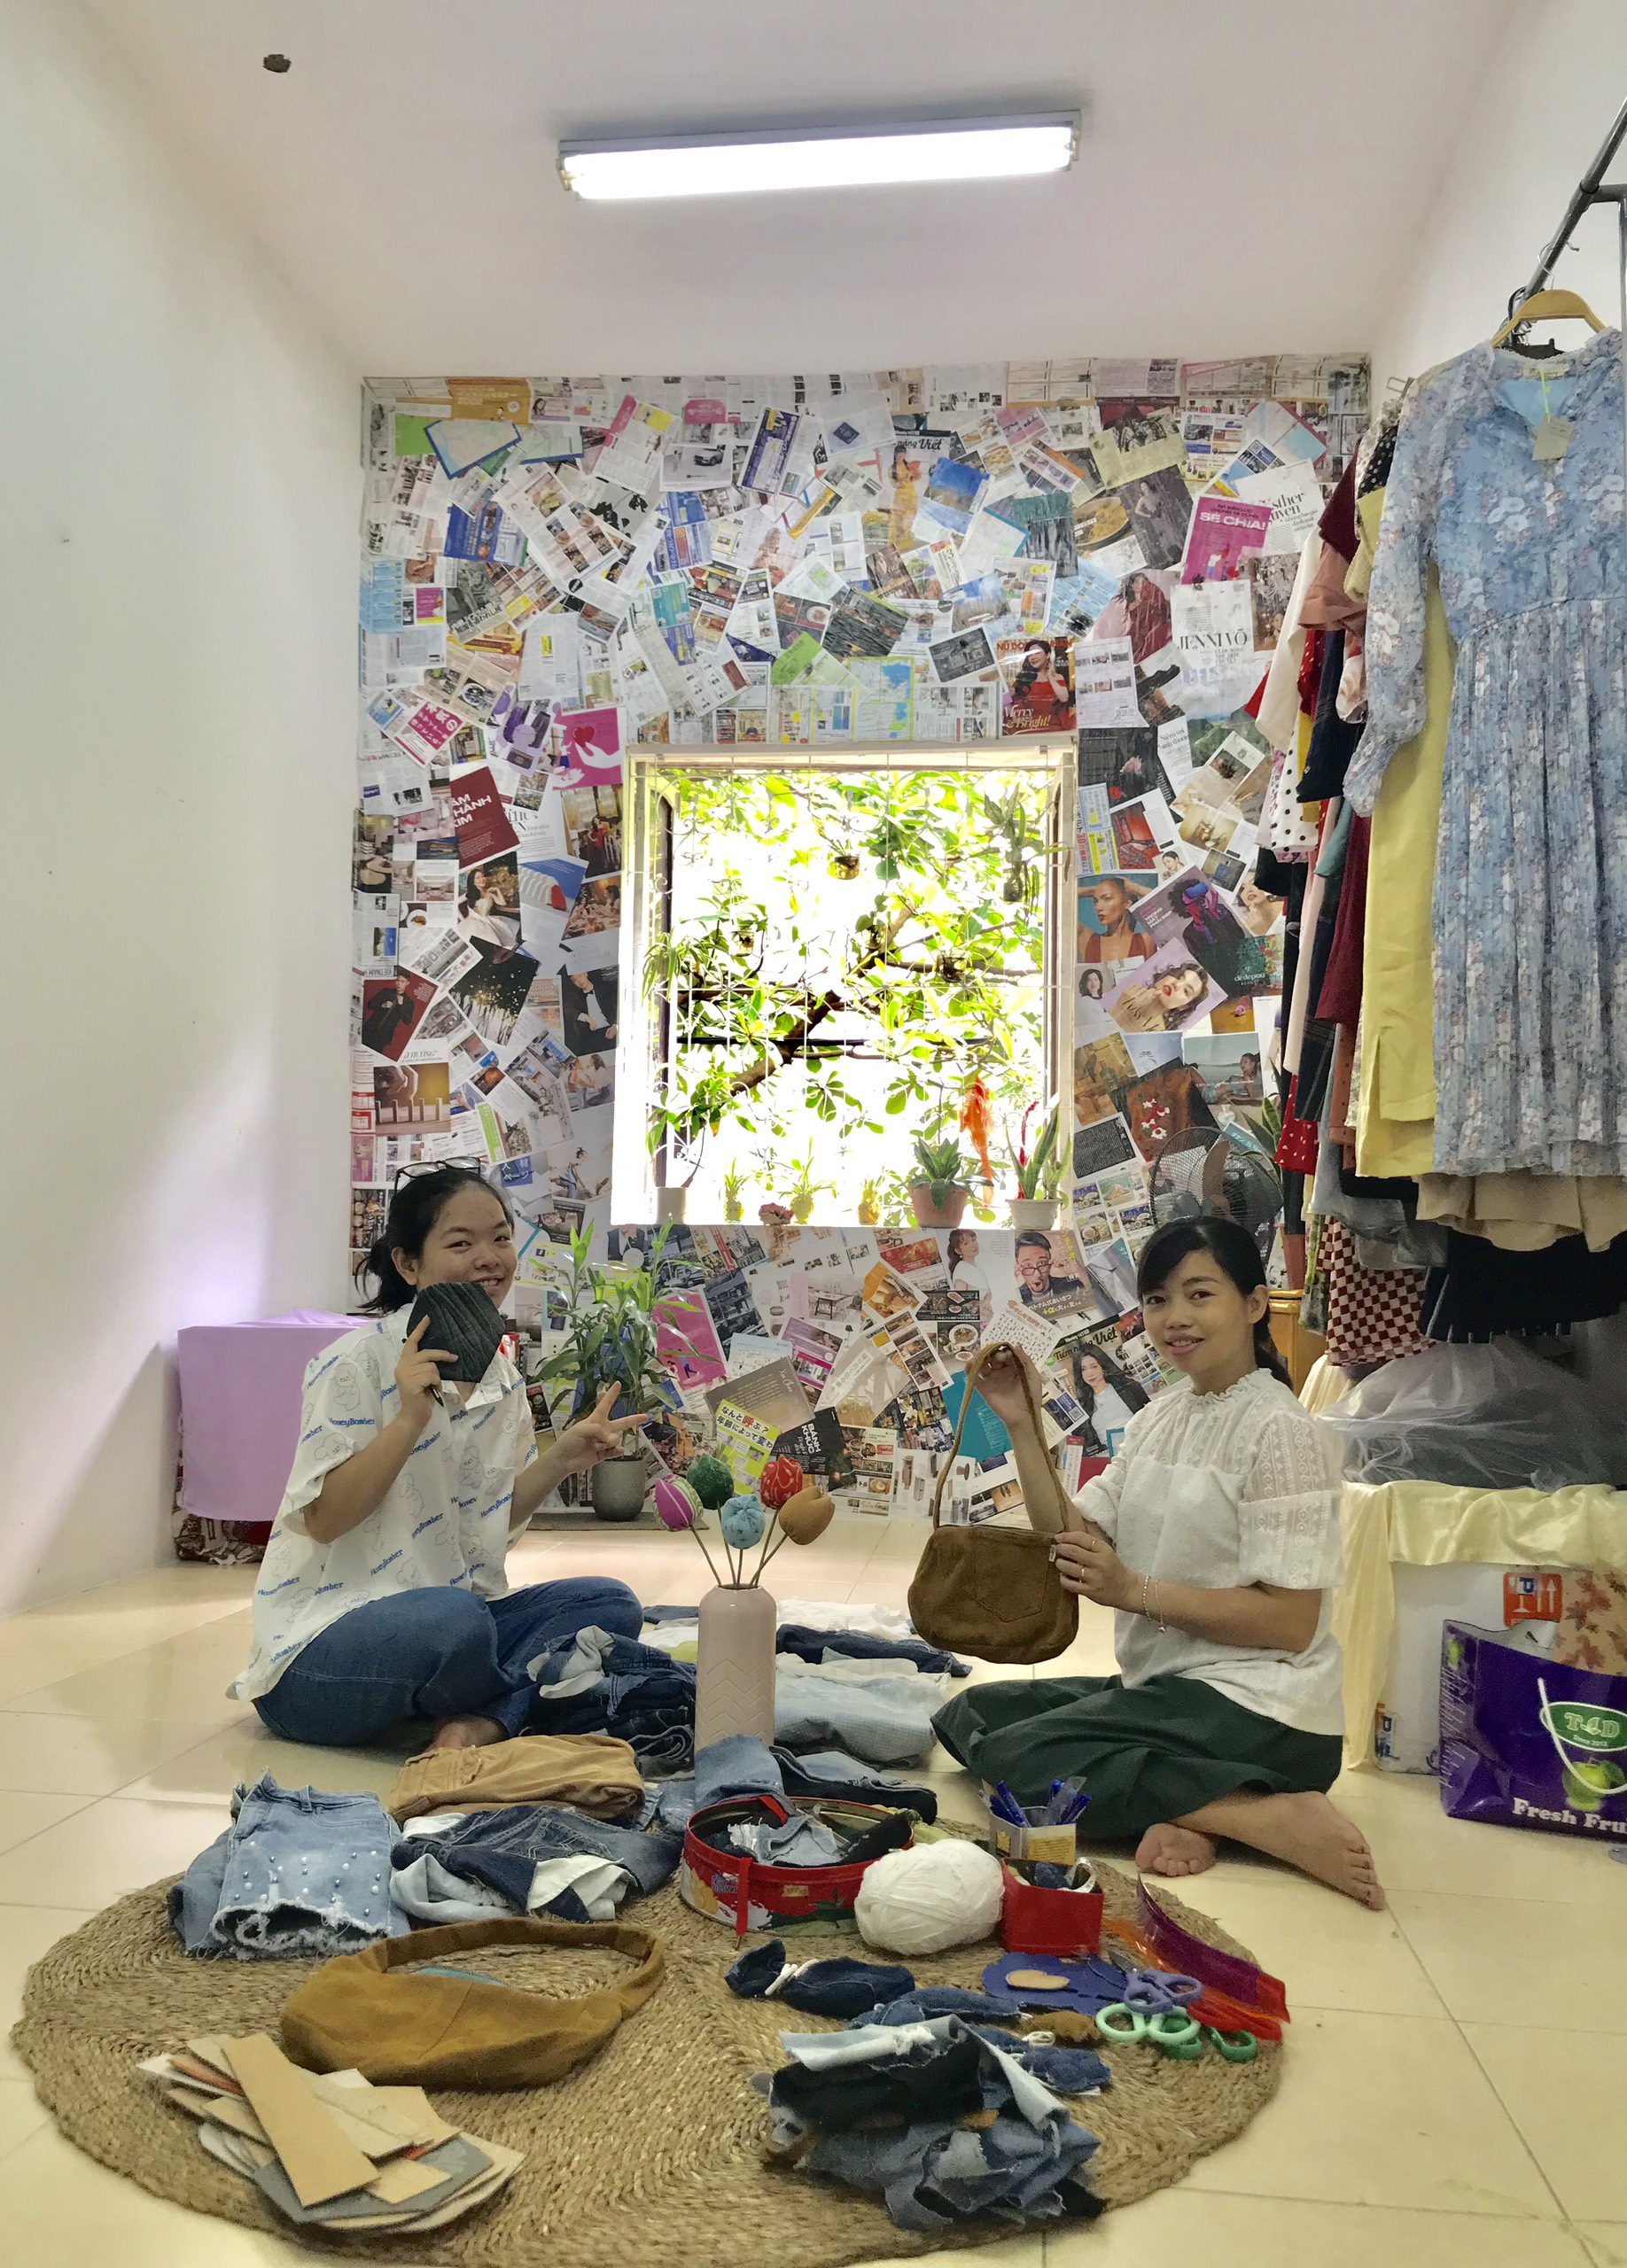 Dự án, mô hình cửa hàng thời trang tuần hoàn của nhóm bạn trẻ: Những món đồ không sử dụng được “tái sinh”, góp phần giảm thiểu rác thải ngành thời trang - Ảnh 5.